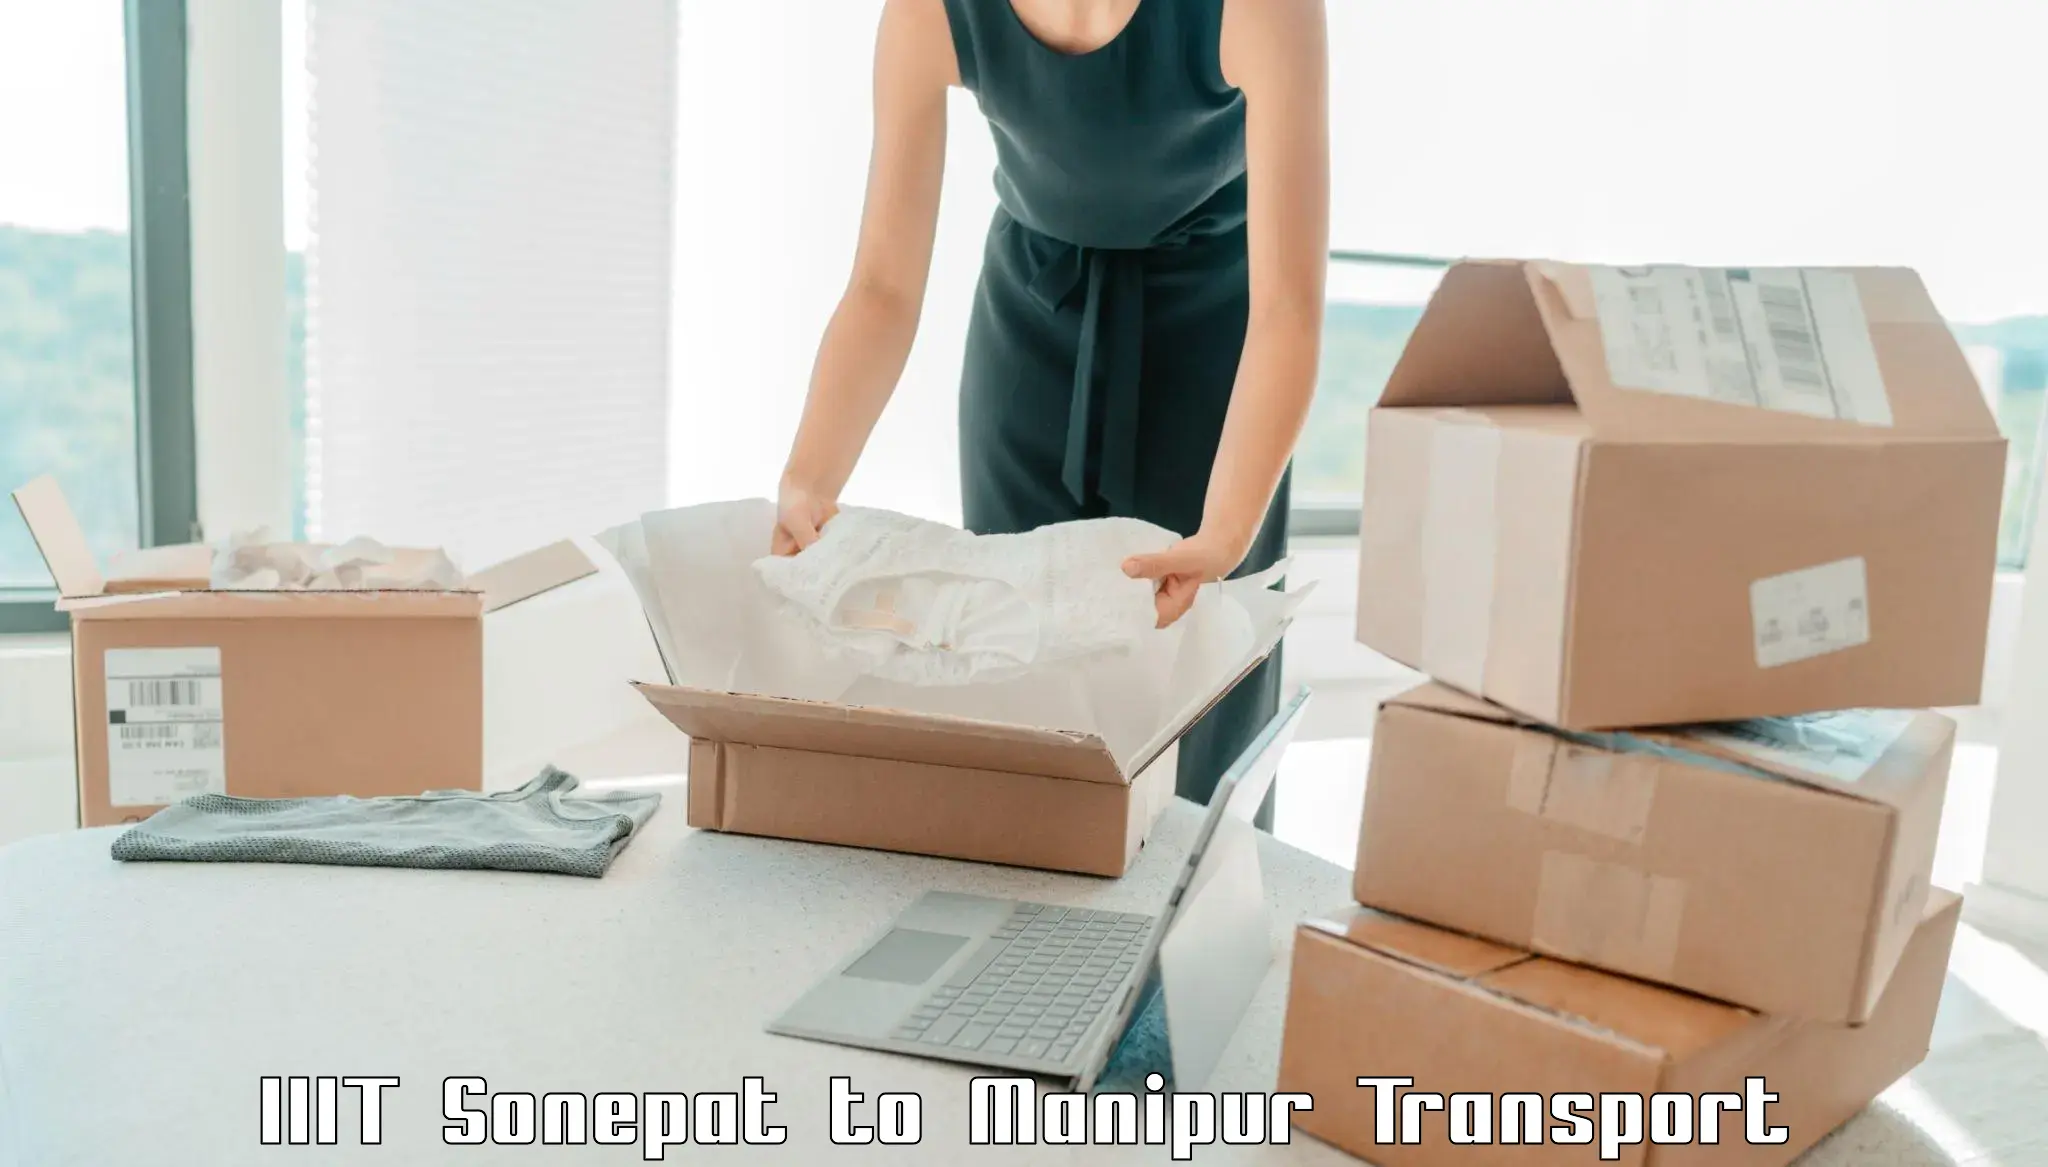 Cargo transportation services IIIT Sonepat to Tadubi